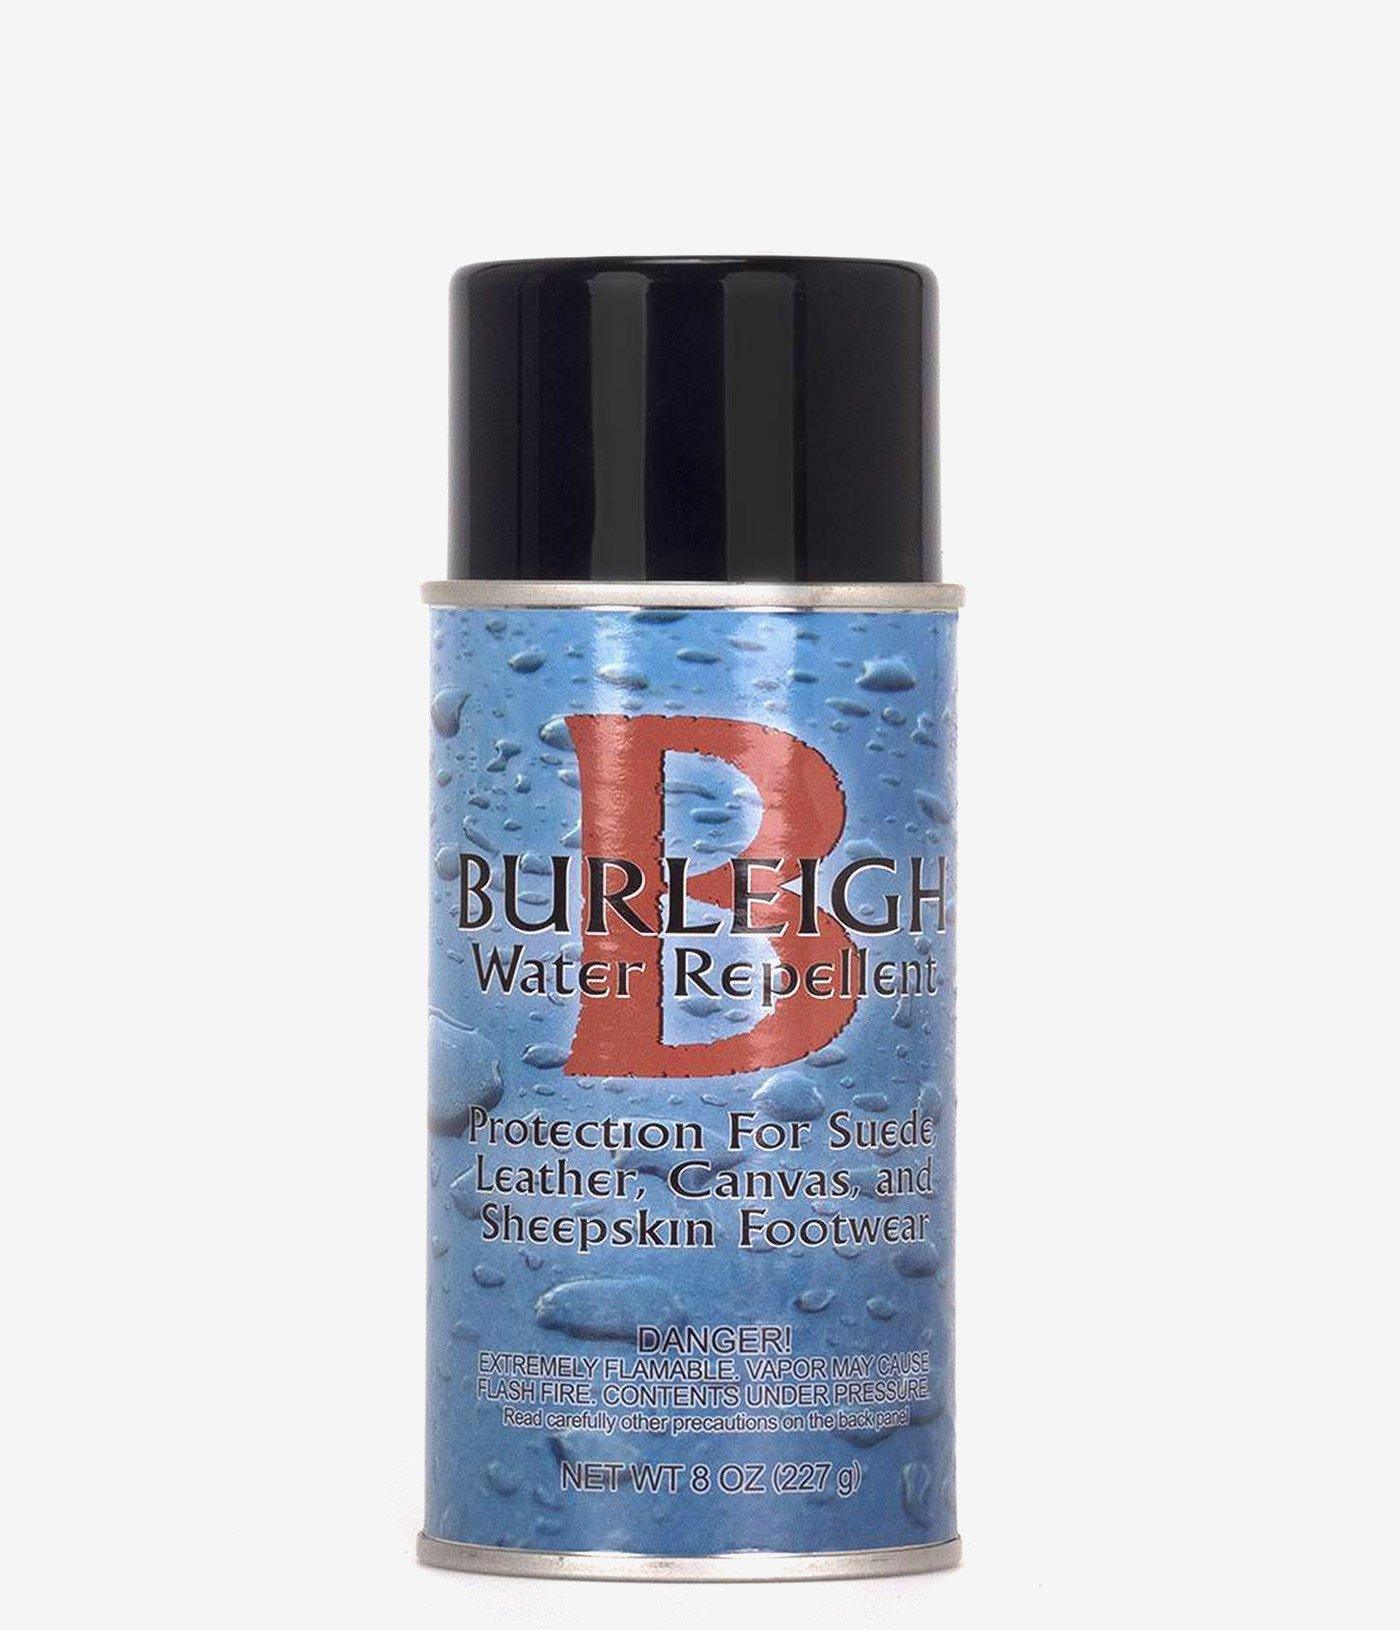 Burleigh Water Repellent